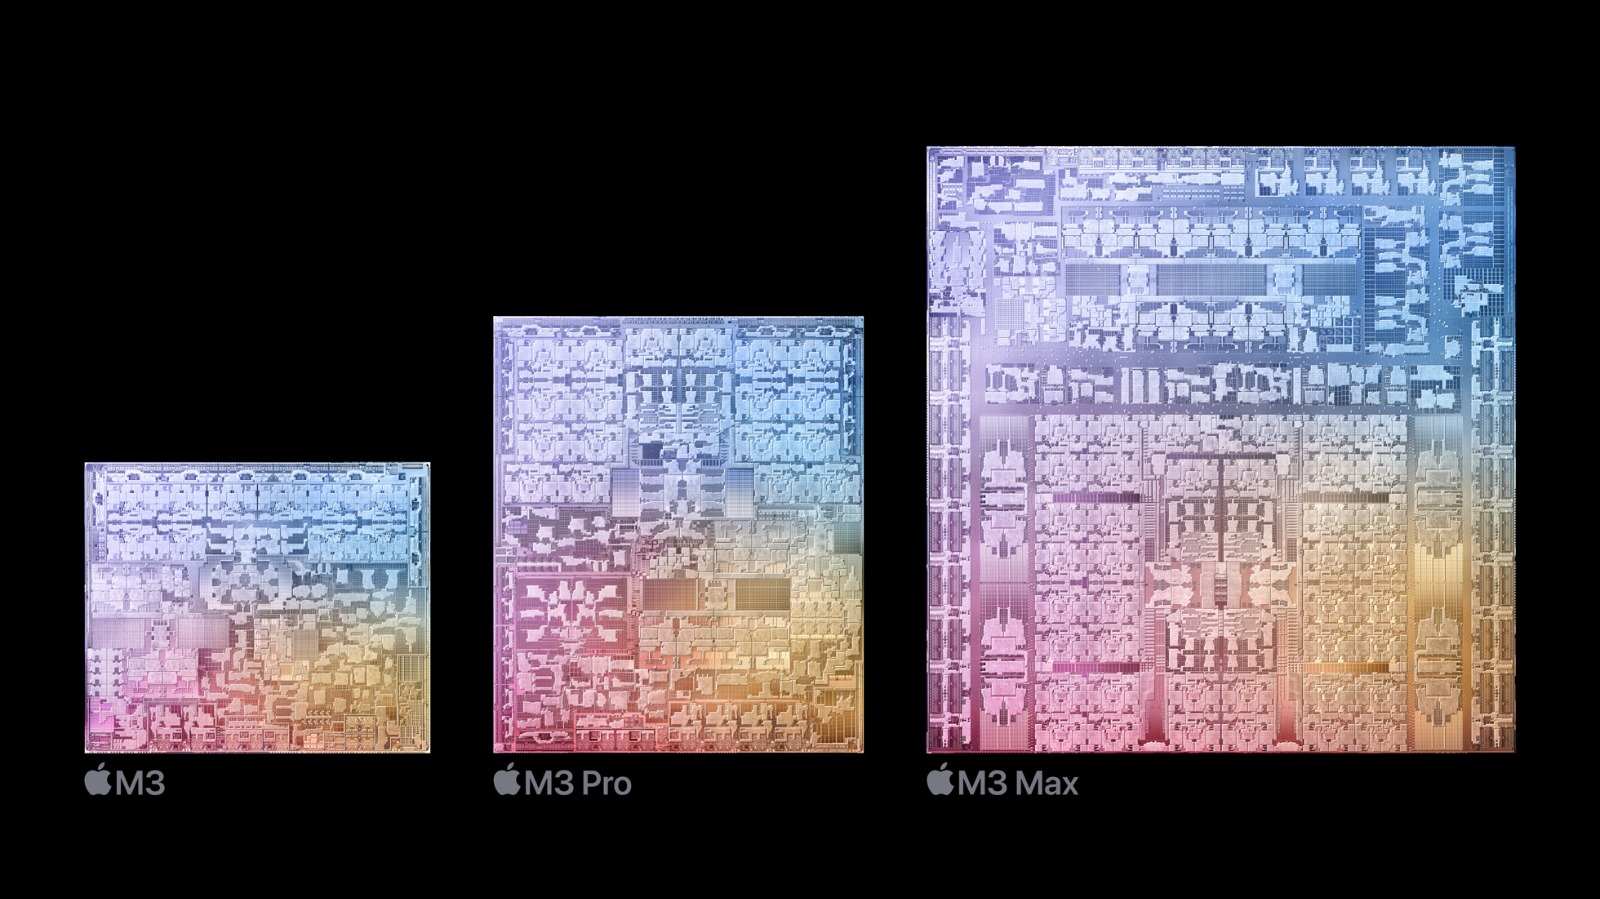 شرائح معالجات M3 وM3 Pro وM3 Max الجديدة لحواسيب أبل ماك